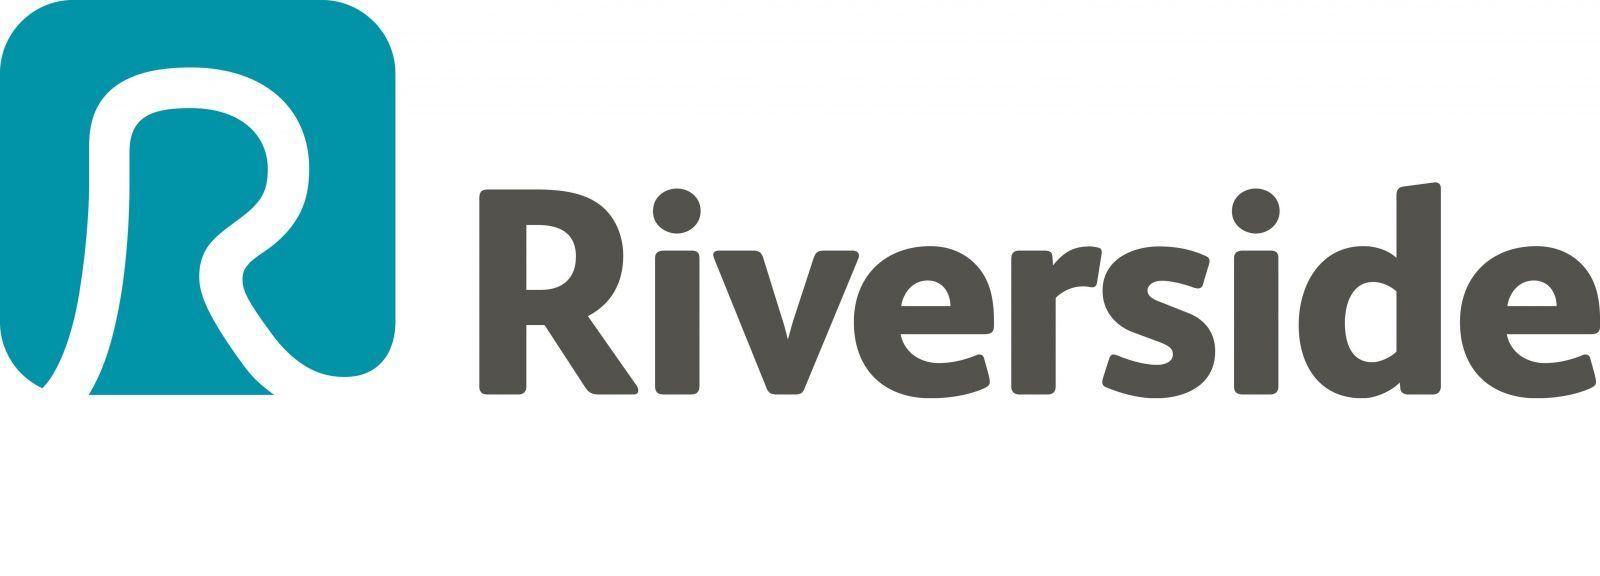 Riverside Logo - Case Study: Riverside Housing noguru